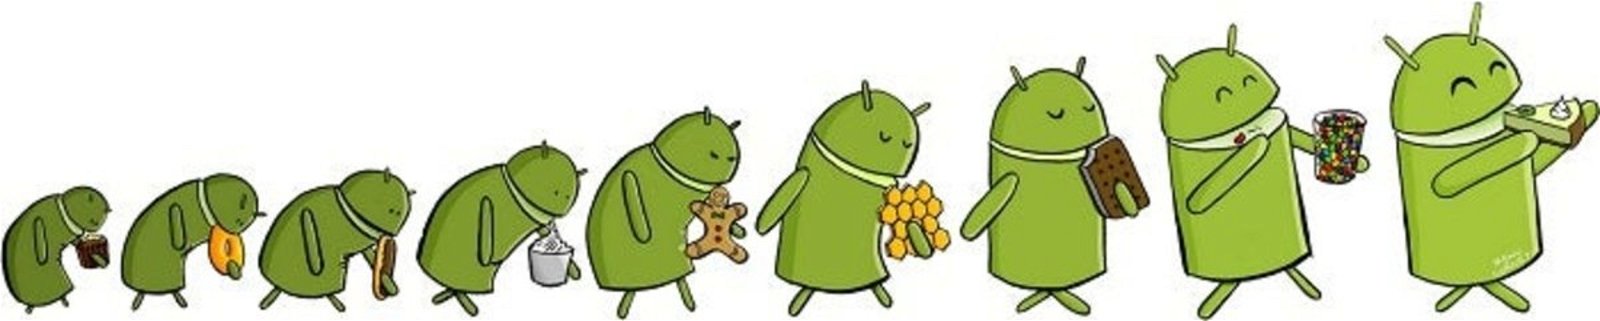 Evolución de las versiones de Android